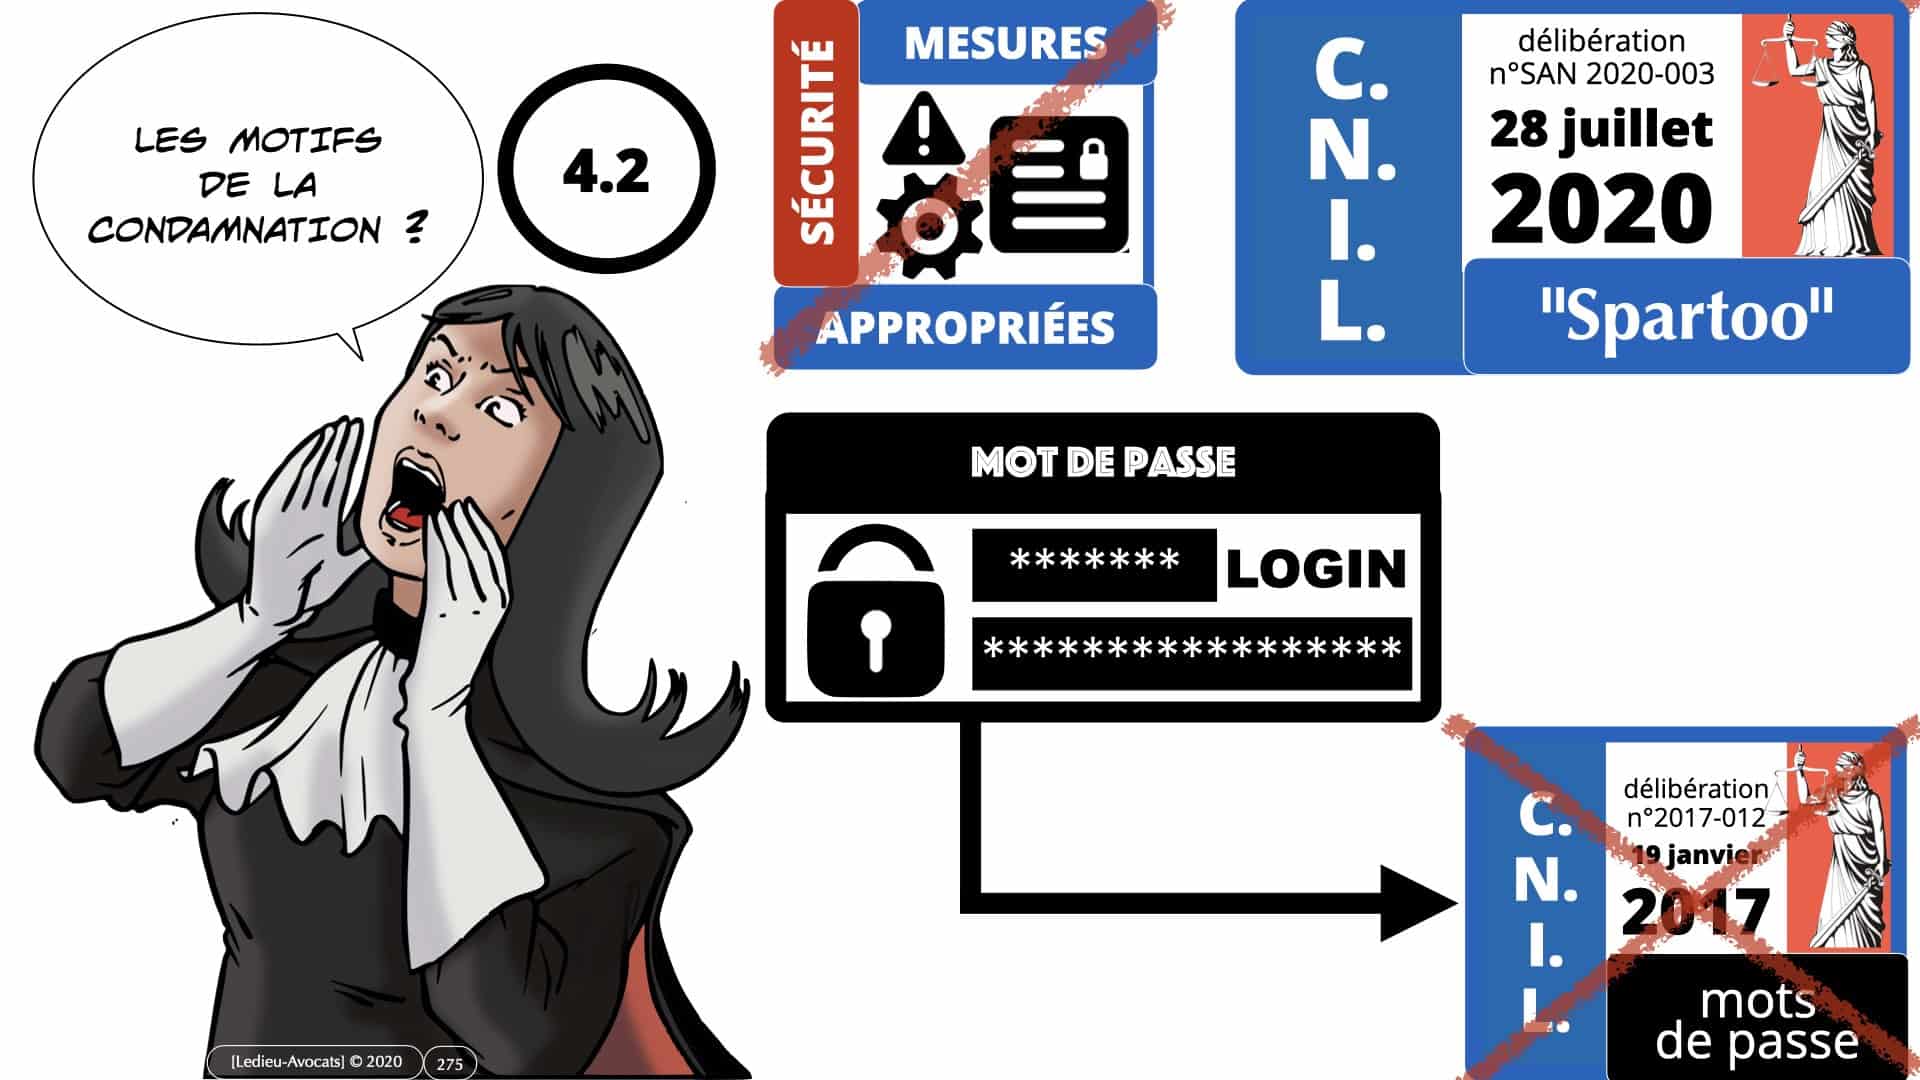 RGPD e-Privacy données personnelles jurisprudence formation Lamy Les Echos 10-02-2021 ©Ledieu-Avocats.275